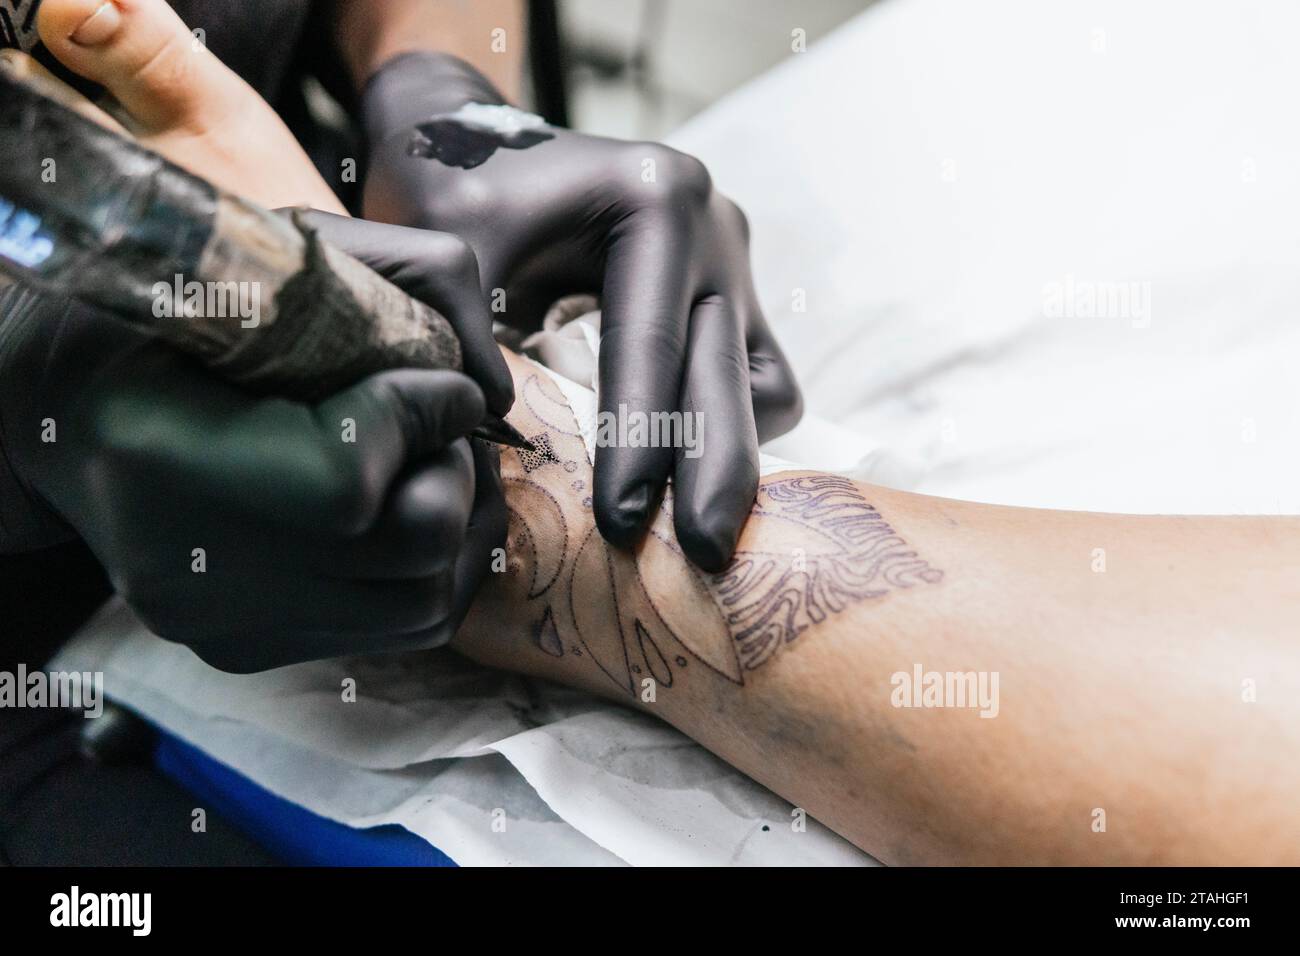 gros plan de tatouage sur le pied d'un client se faisant tatouer Banque D'Images